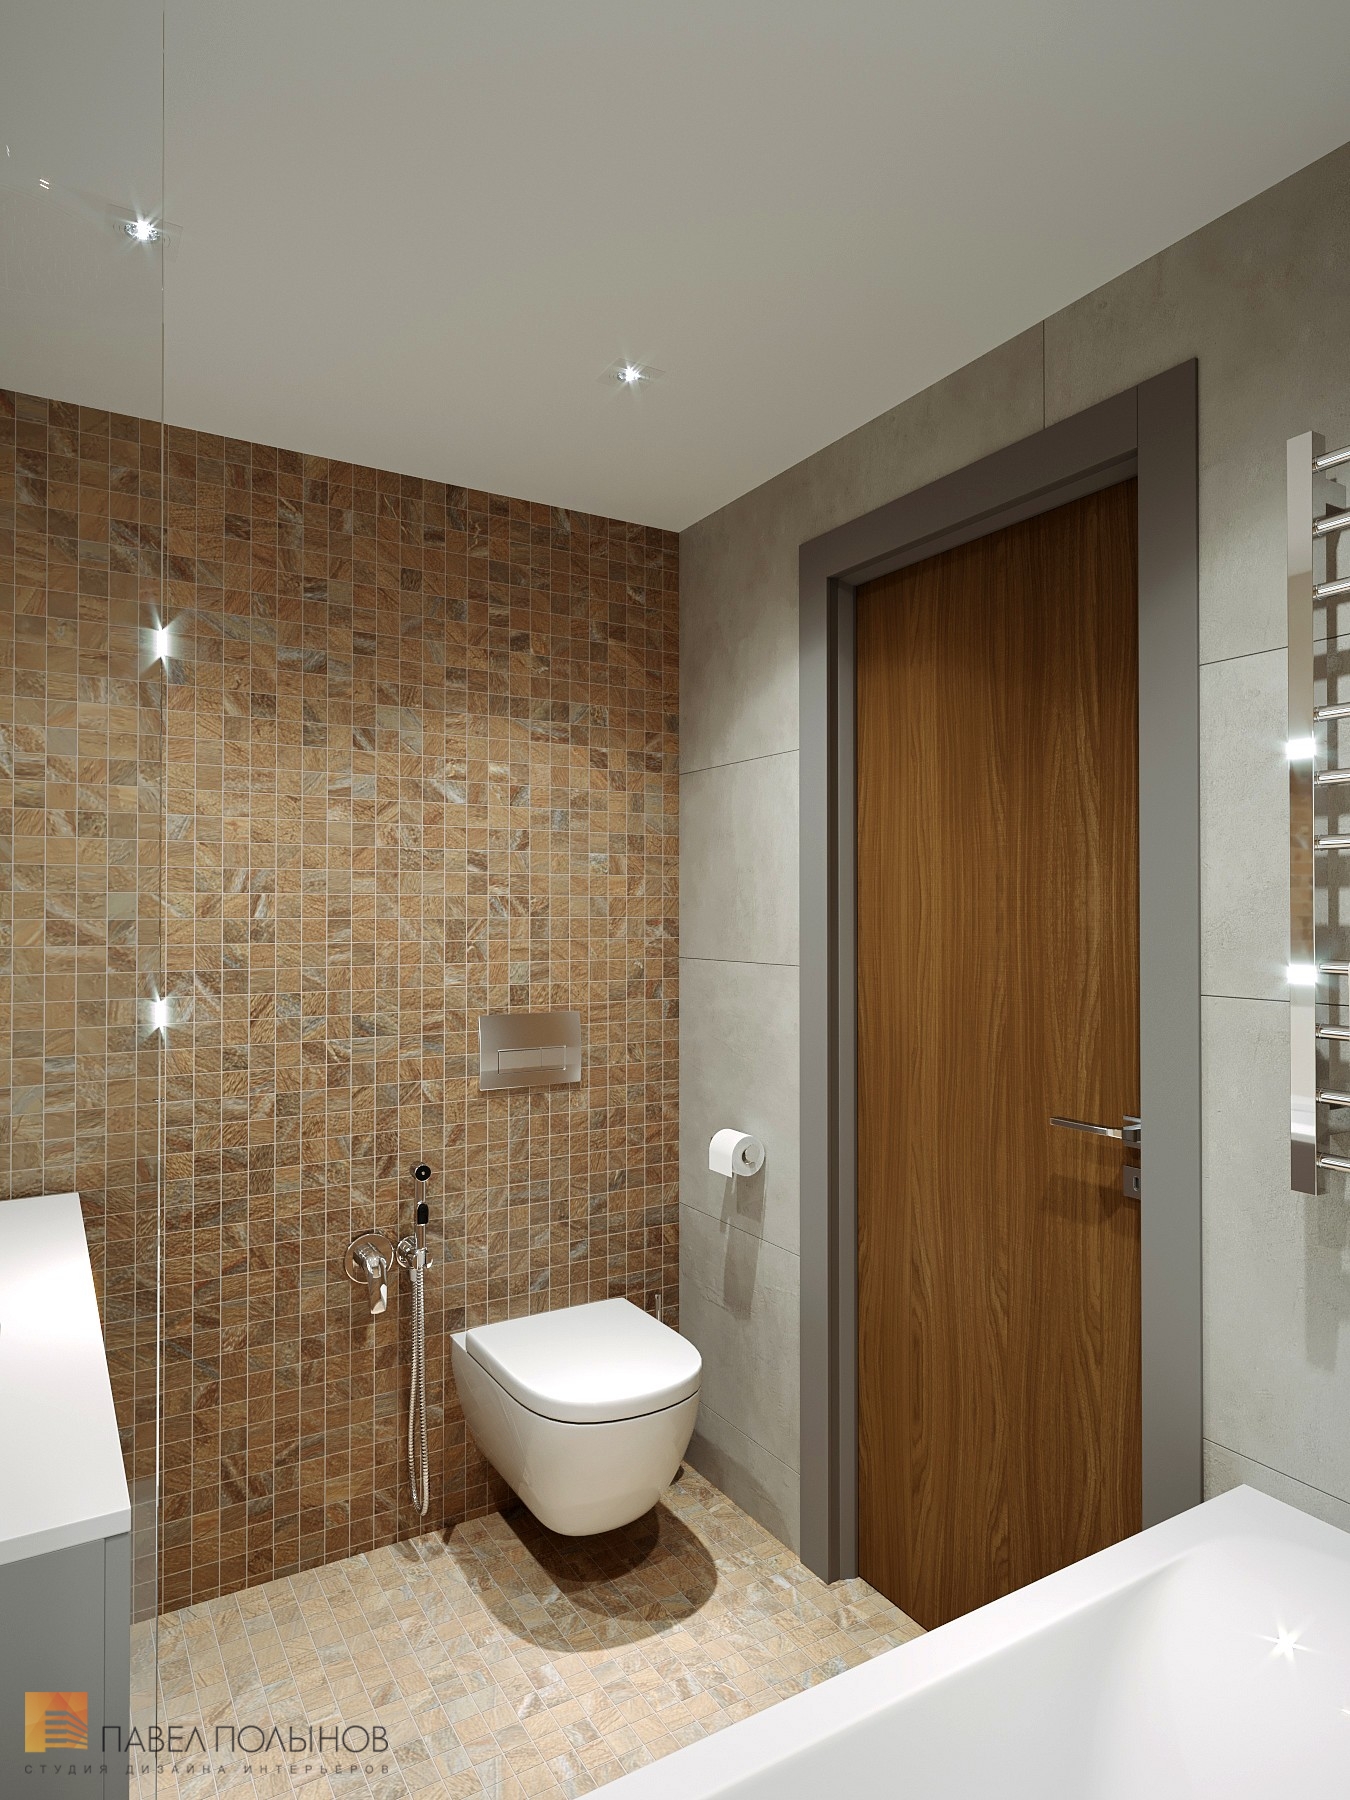 Фото дизайн интерьера ванной комнаты из проекта «Интерьер квартиры с современном стиле с элементами скандинавского, ЖК «Skandi Klubb», 77 кв.м.»